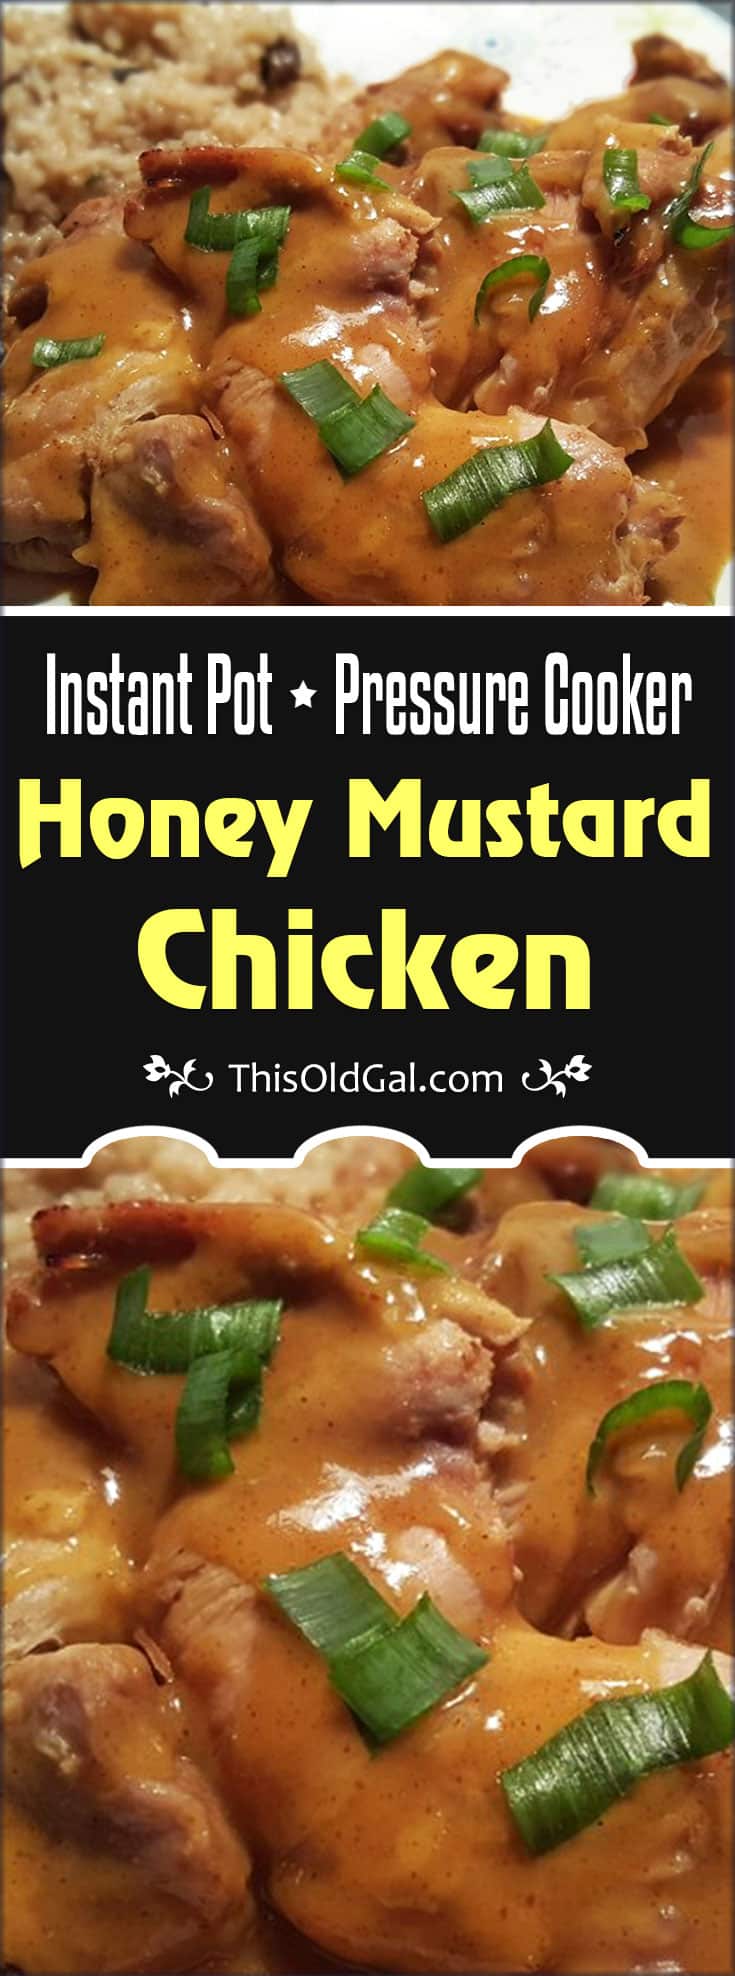 Pressure Cooker Honey Mustard Chicken